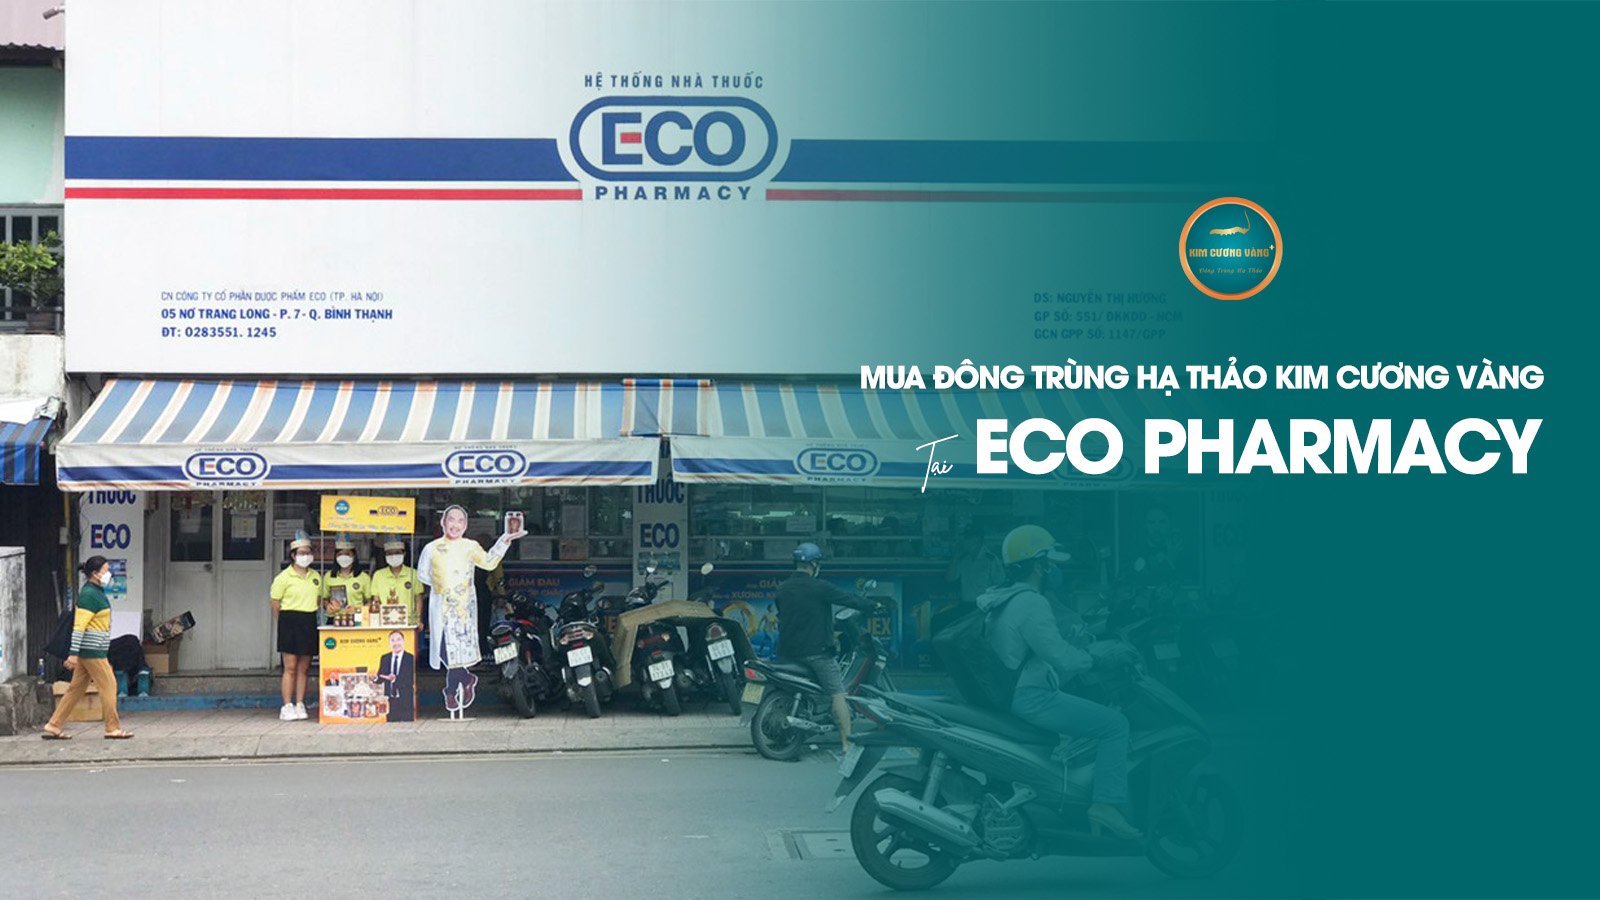 Đông Trùng Hạ Thảo Kim Cương Vàng Đã Có Mặt Trong Hệ Thống Nhà Thuốc Eco Pharmacy